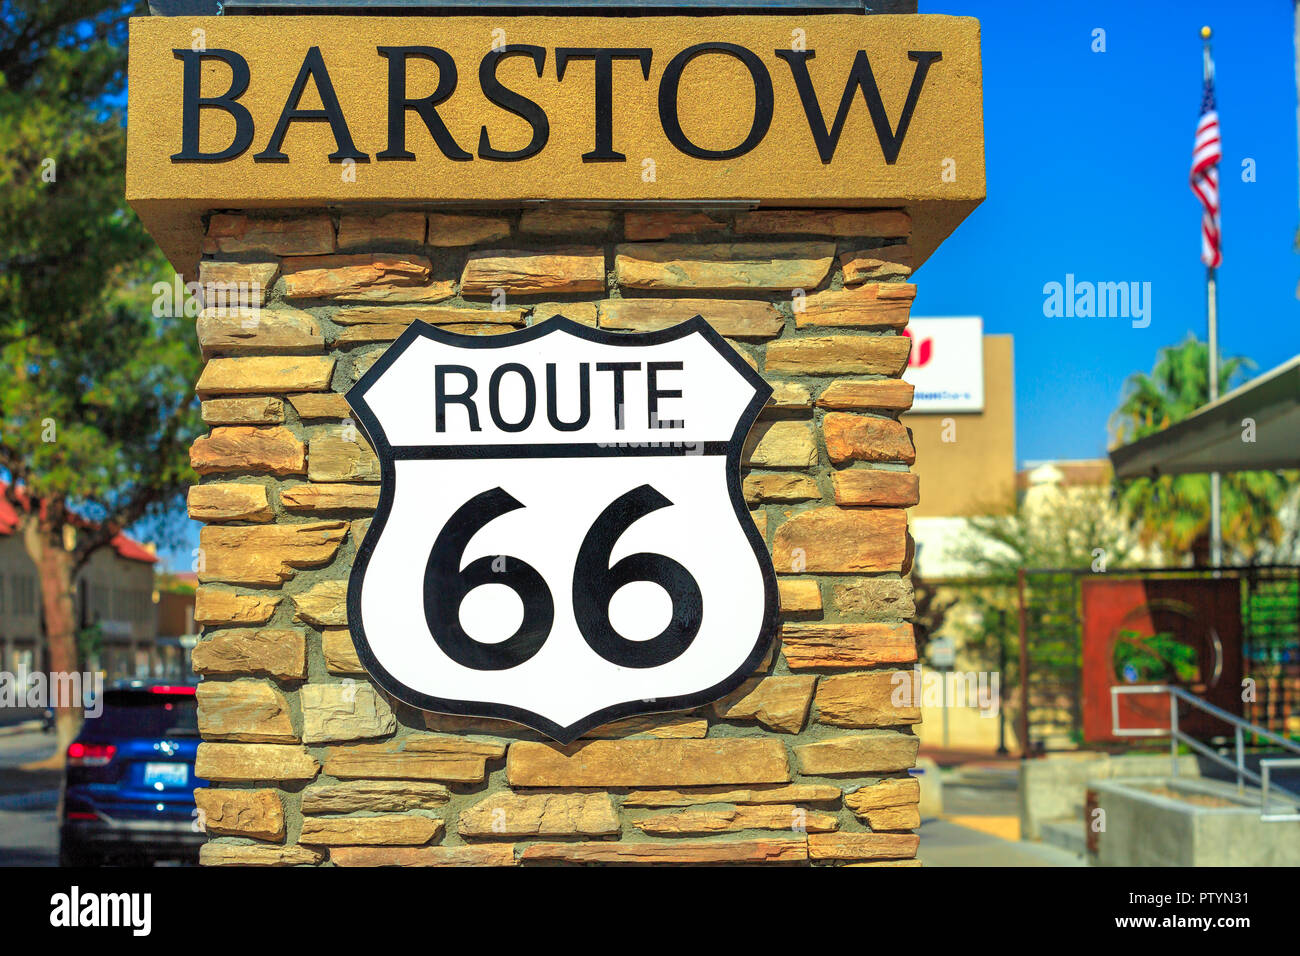 Barstow, California, Stati Uniti d'America - Agosto 15, 2018: primo piano della storica Route 66 cartello stradale lungo la via principale di Barstow. Famosa strada Madre o sessanta sei segno, Stati Uniti d'America. Foto Stock